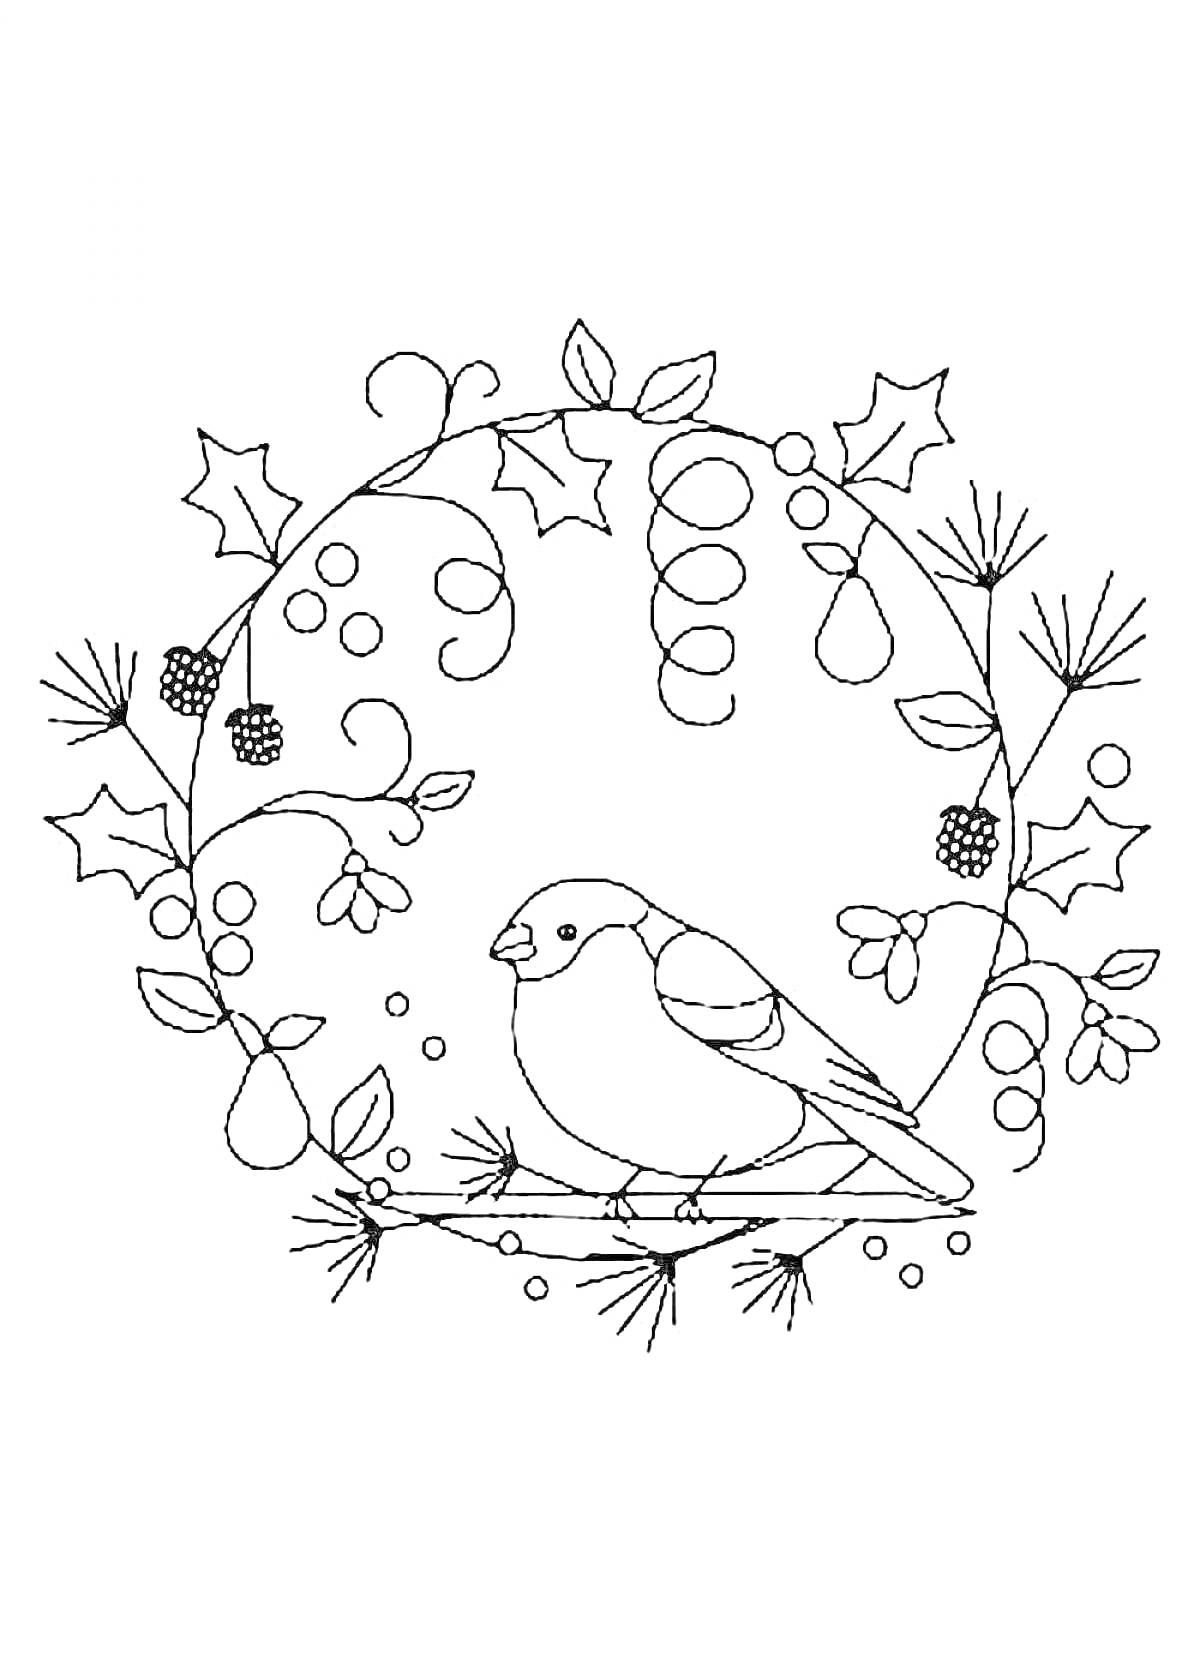 Раскраска снегирь на ветке с декором из листьев, ягод, шишек и веточек